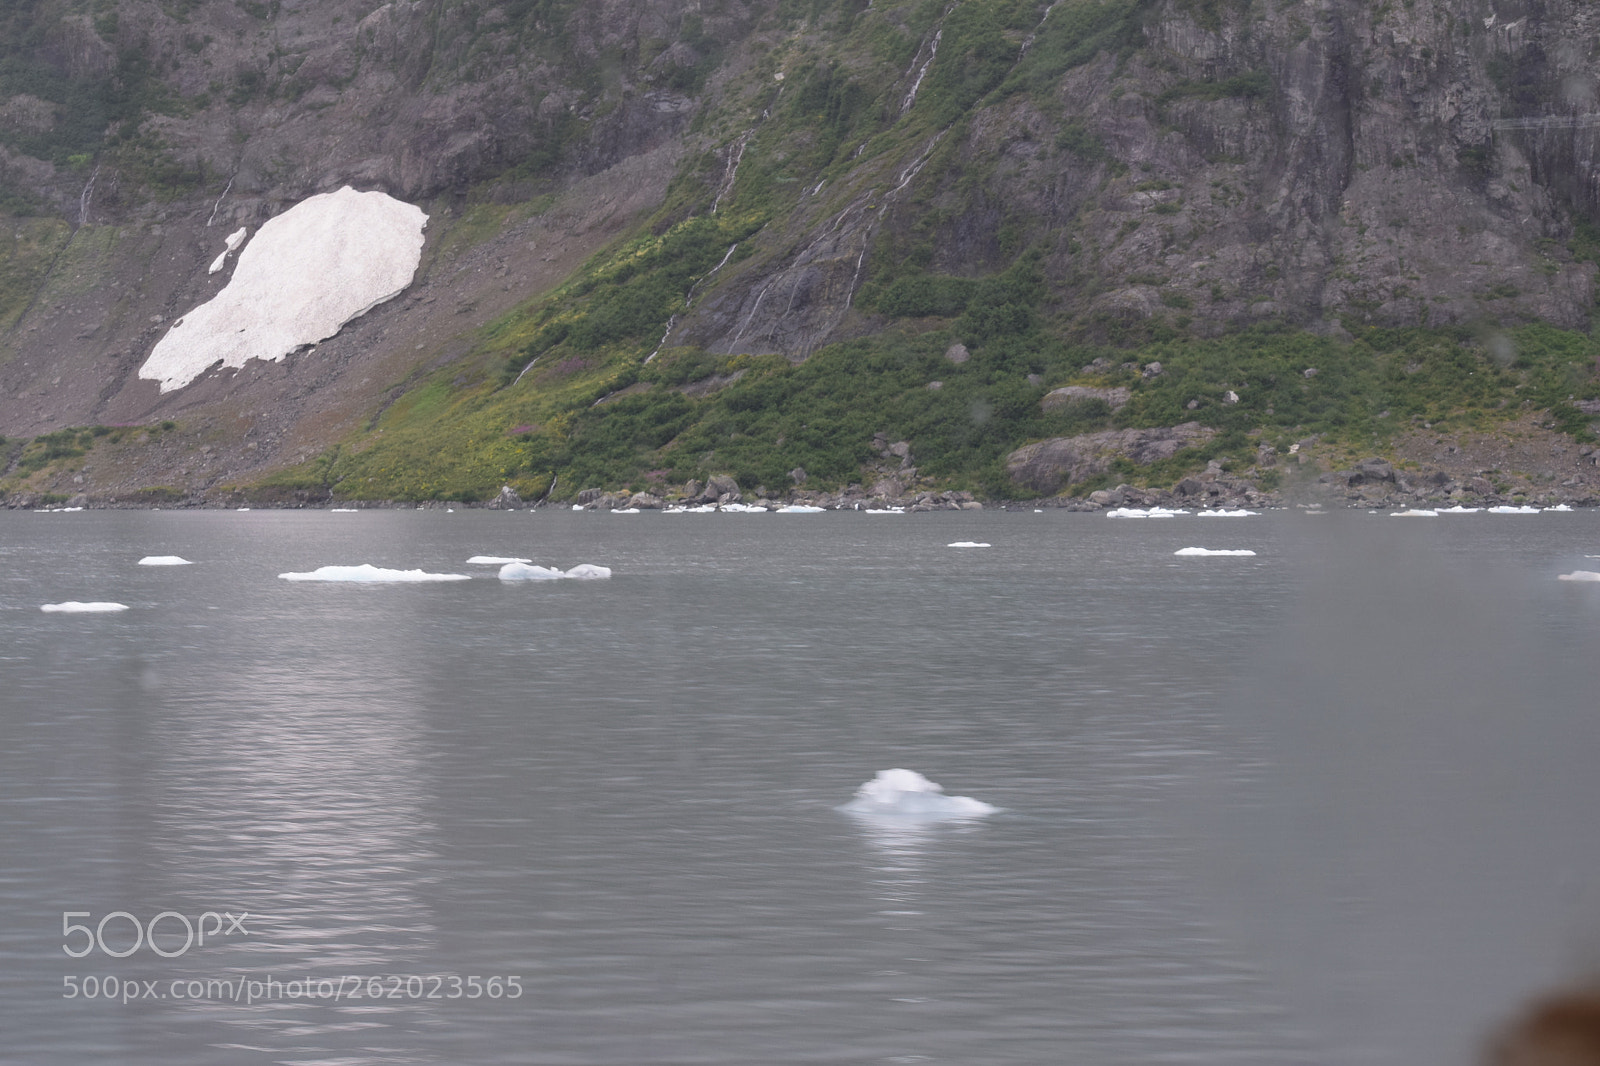 Nikon AF-S DX Nikkor 55-300mm F4.5-5.6G ED VR sample photo. Alaska glaciers photography